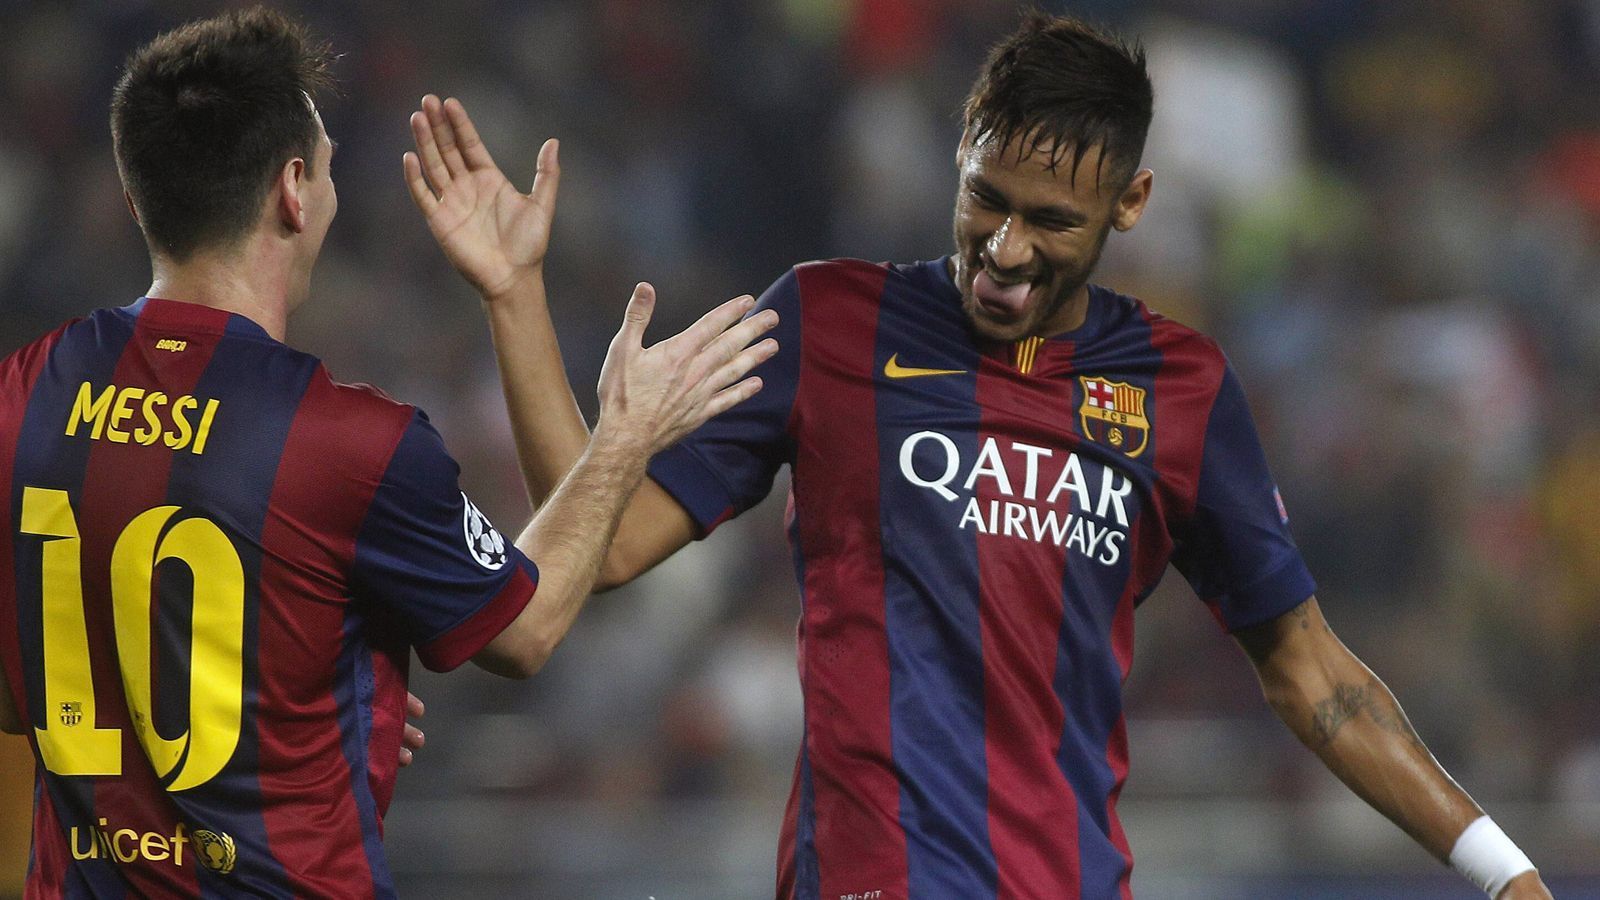 
                <strong>Lionel Messi und Neymar (FC Barcelona, Saison 2014/15)</strong><br>
                Tore gesamt: 20 (beide jeweils zehn Treffer)
              